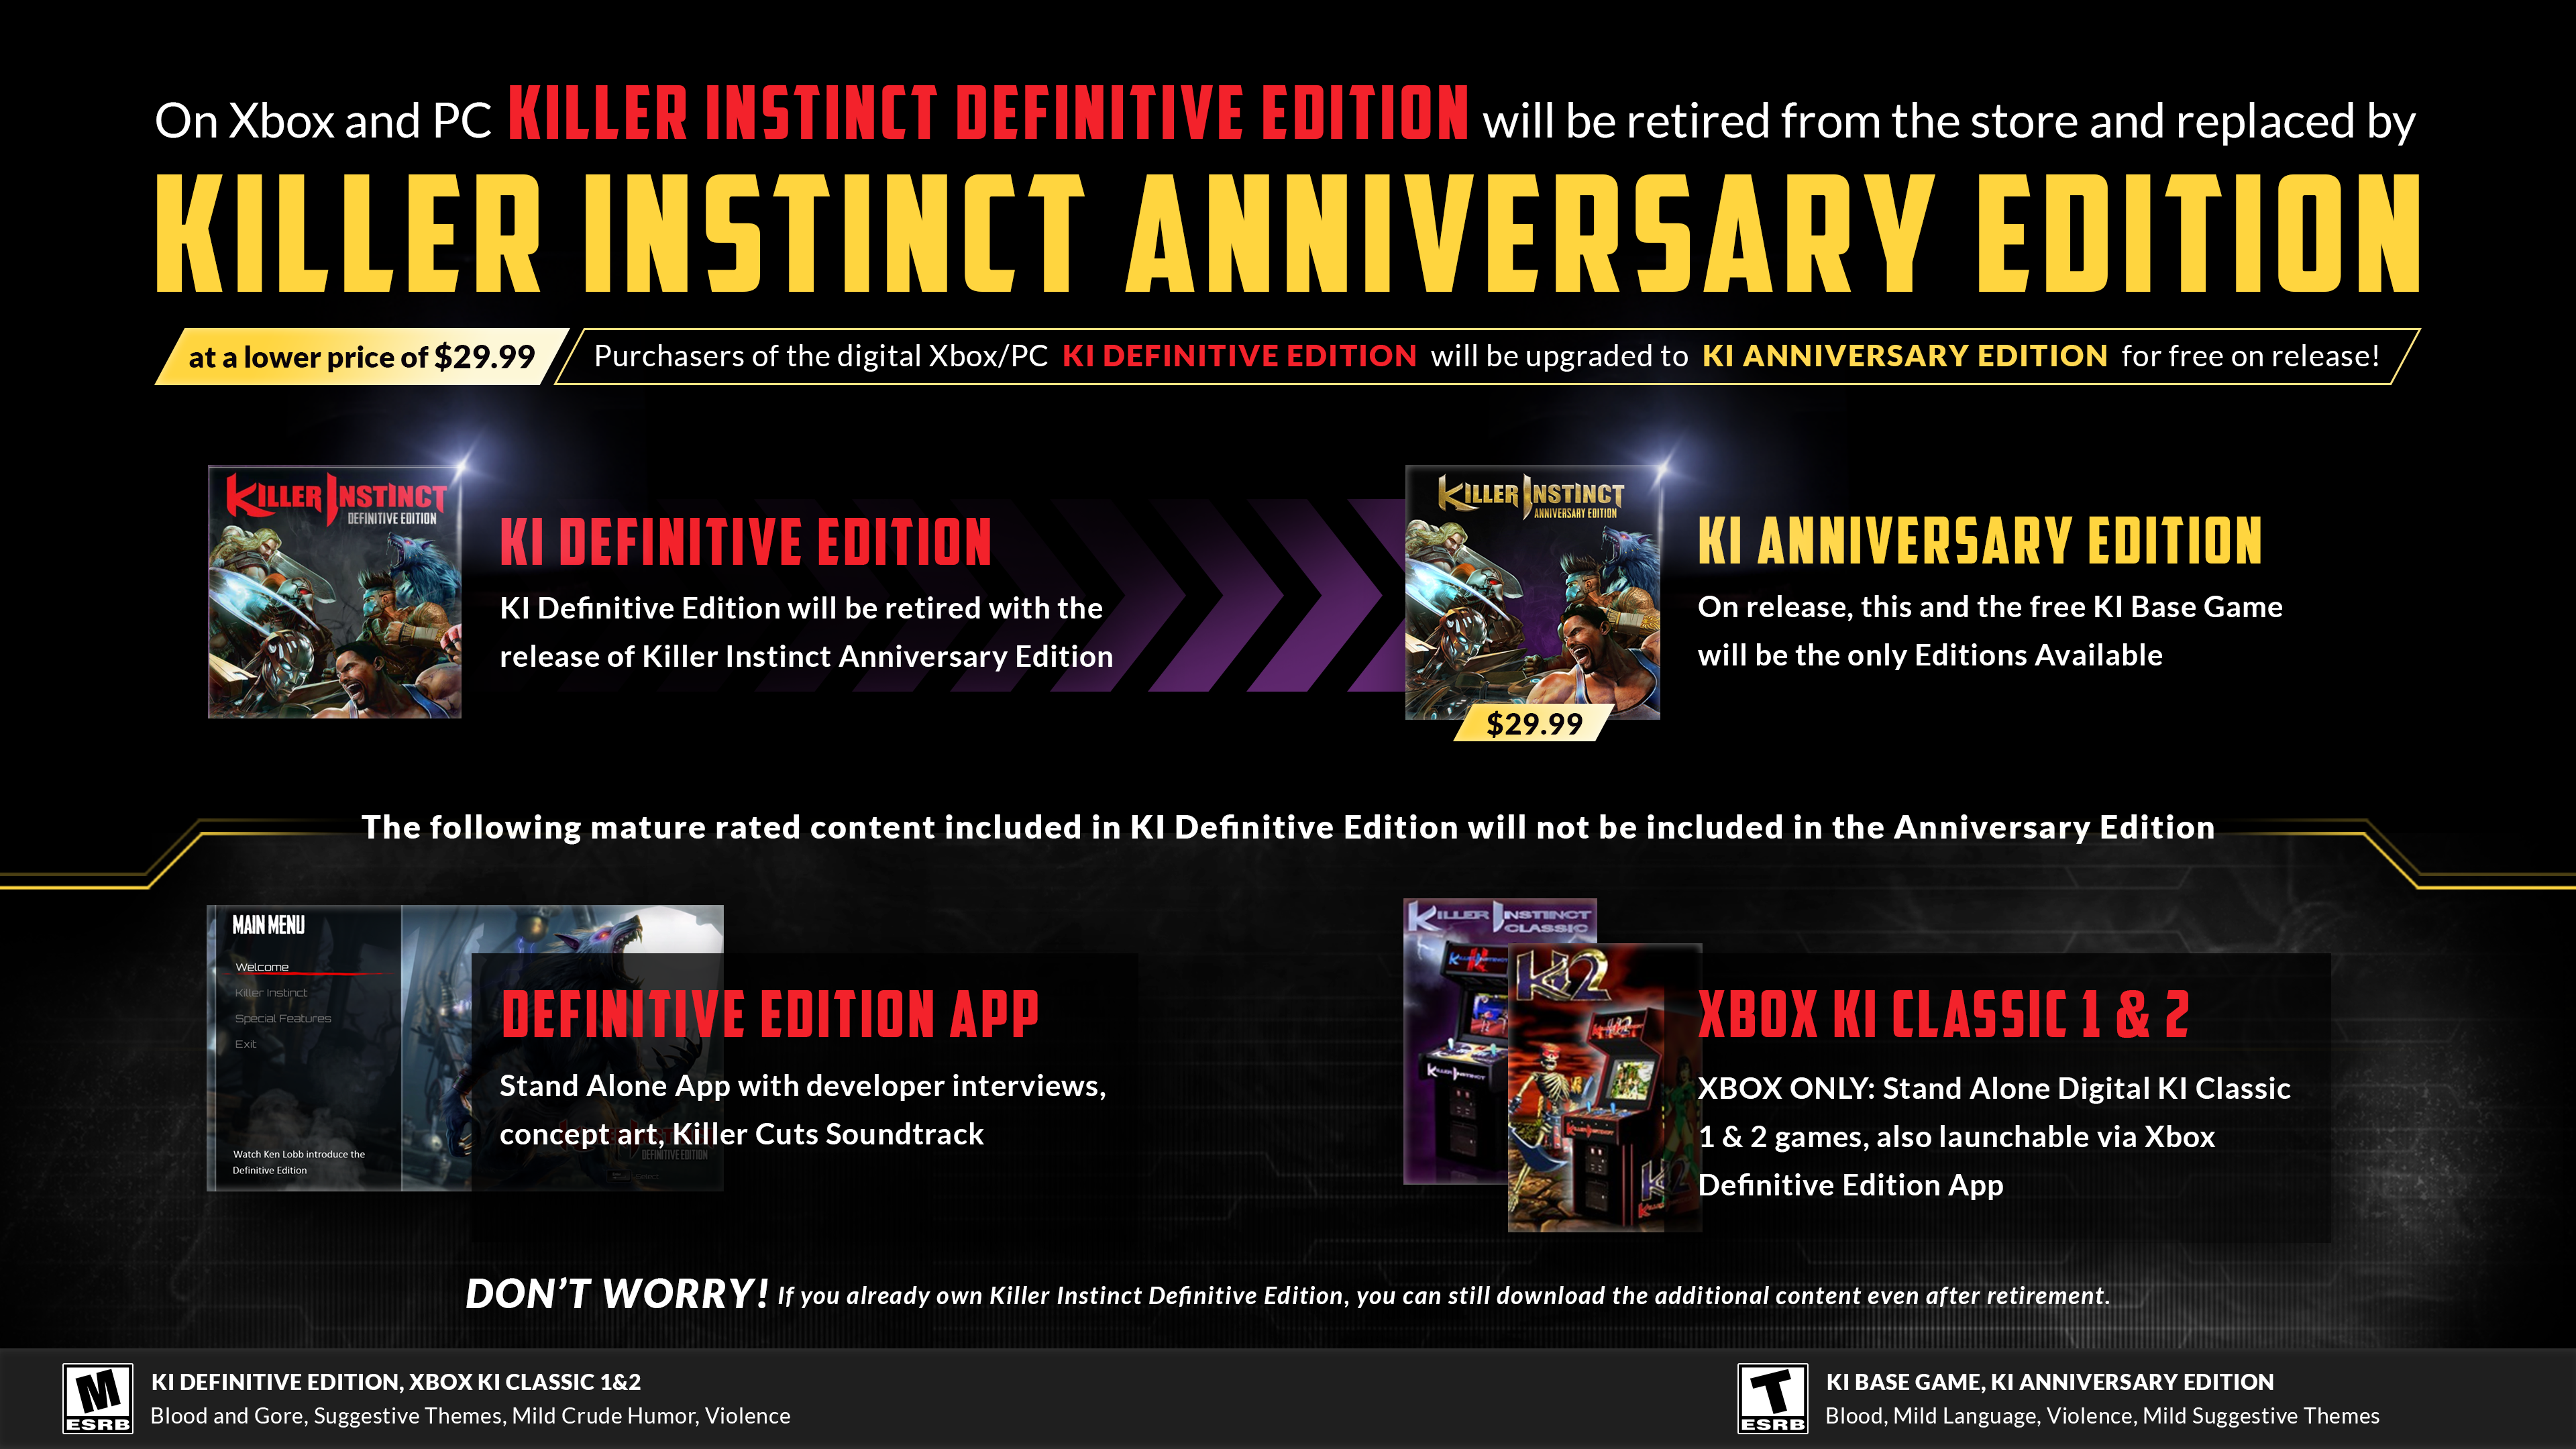 Xbox ve PC'de Killer Instinct Definitive Edition mağazadan kaldırılacak ve yerine 29,99 $ gibi daha düşük bir fiyatla Killer Instinct Anniversary Edition getirilecek Dijital Xbox/PC KI Definitive Edition'ı satın alanlar, piyasaya sürüldüğünde ücretsiz olarak KI Anniversary Edition'a yükseltilecek!  KI Definitive Edition, Killer Instinct Anniversary Edition'ın çıkışıyla birlikte kullanımdan kaldırılacak KI Anniversary Edition (29,99$) Yayınlandığında, bu ve ücretsiz KI Temel Oyunu mevcut tek Sürümler olacak KI Definitive Edition'da yer alan aşağıdaki Yetişkinler için derecelendirilmiş içerik, Anniversary Edition'a dahildir: Definitive Edition Uygulaması: Geliştirici röportajları, konsept çizimleri, Killer Cuts Film Müziği içeren Stand Alone Uygulaması Xbox KI Classic 1 & 2 YALNIZCA XBOX: Stand Alone Digital KI Classic 1 & 2 oyunları, ayrıca Xbox Definitive Edition Uygulaması DON aracılığıyla başlatılabilir ENDİŞELENME!  Killer Instinct Definitive Edition'a zaten sahipseniz emeklilikten sonra bile ek içeriği indirmeye devam edebilirsiniz.  Yetişkinler için ESRB M Derecesi: KI Definitive Edition, Xbox KI Classic 1 ve 2;  Kan ve Kan, Müstehcen Temalar, Hafif Kaba Mizah, Şiddet ESRB Gençlere Yönelik T Derecelendirmesine Sahip: KI Temel Oyun, KI Yıldönümü Sürümü;  Kan, Hafif Dil, Şiddet, Hafif Müstehcen Temalar